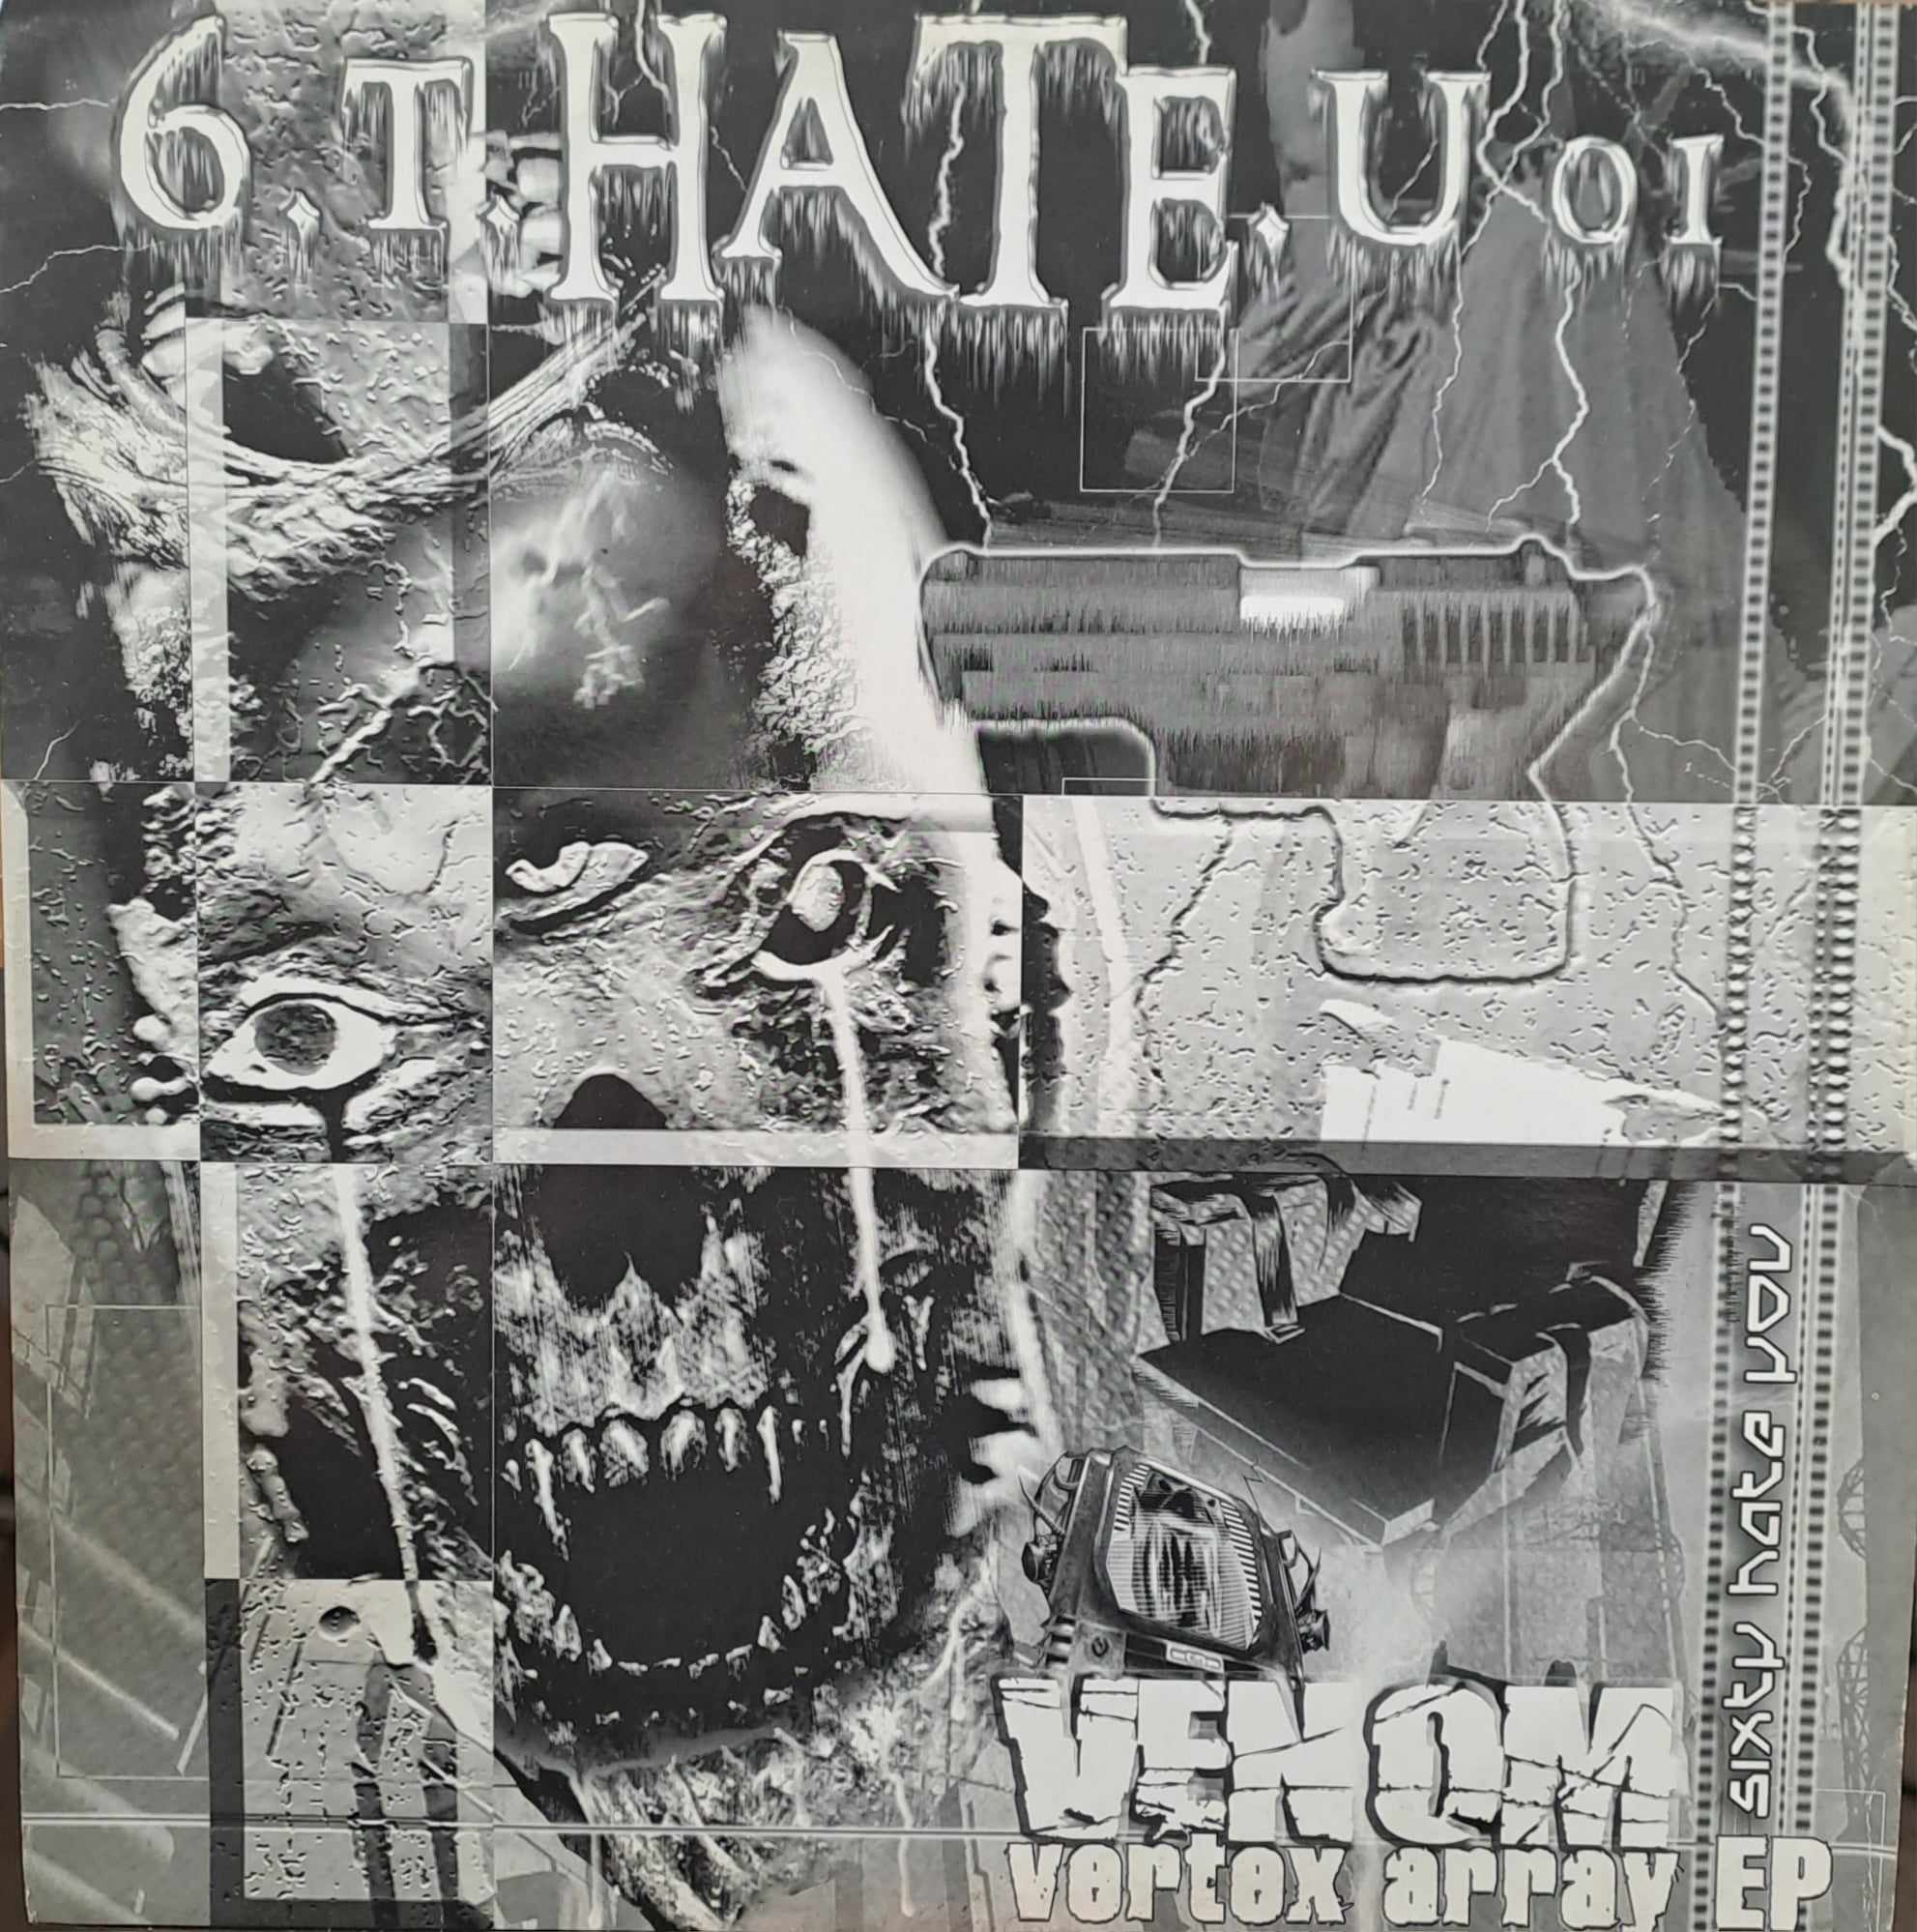 6.T.Hate.U 01 - vinyle hardcore